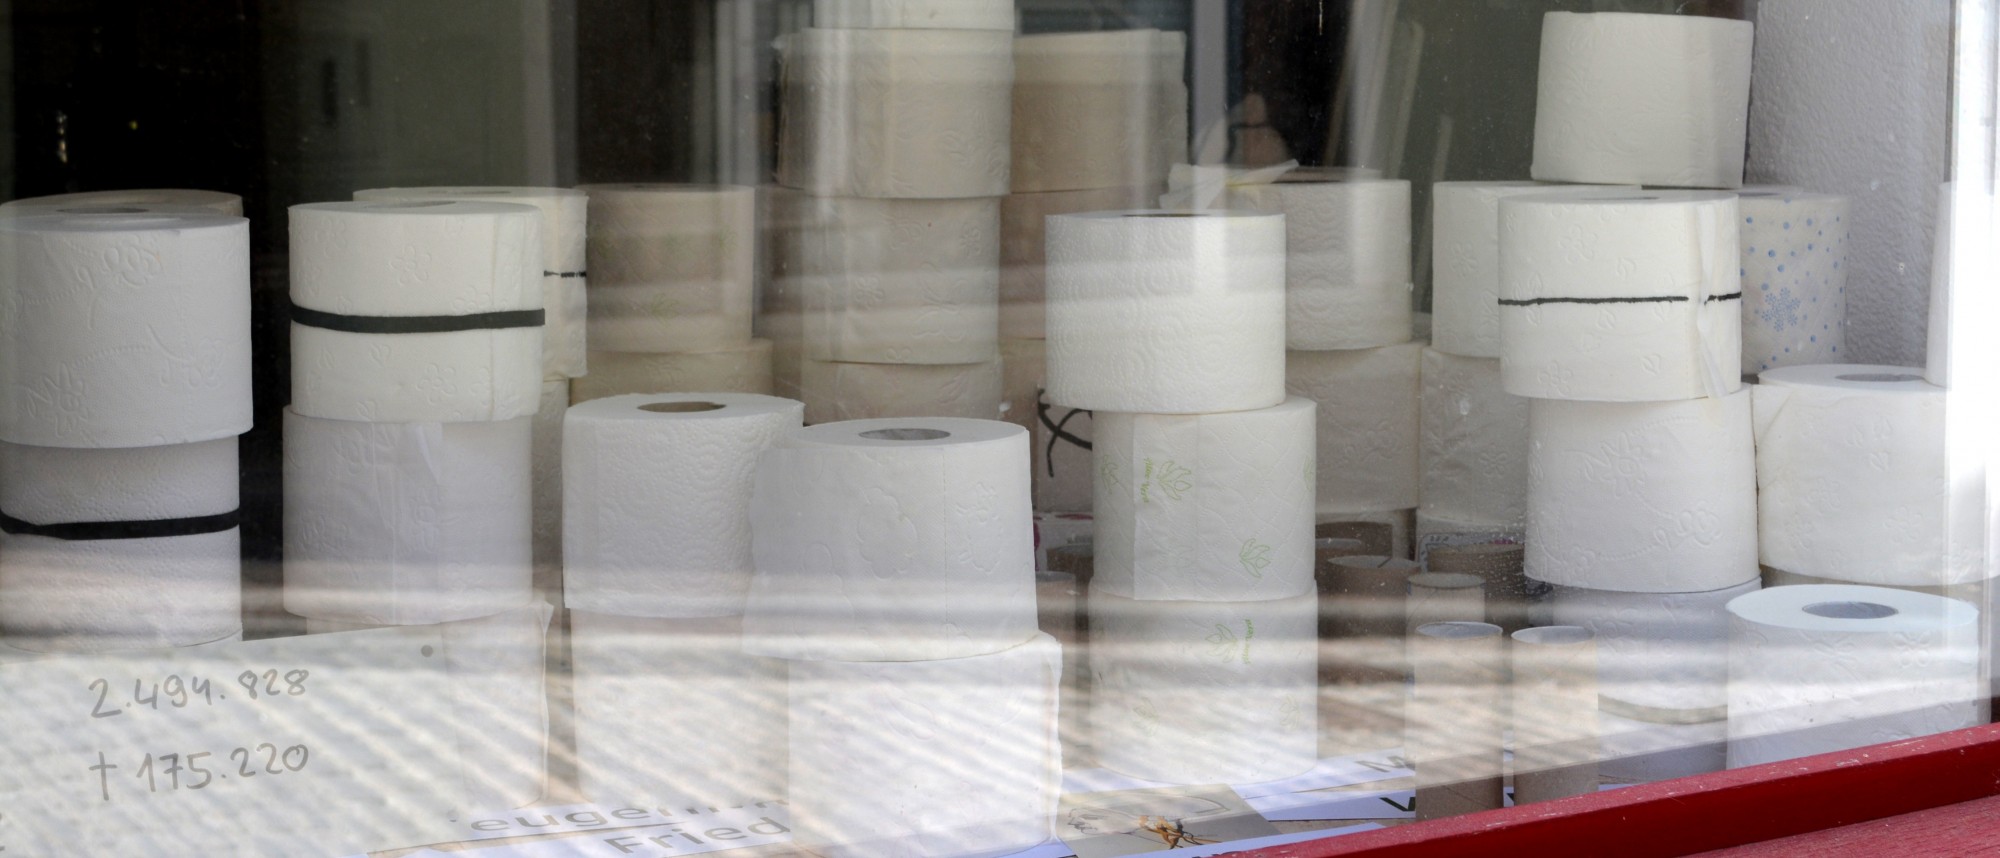 Gestapelte Rollen Toilettenpapier im Schaufenster